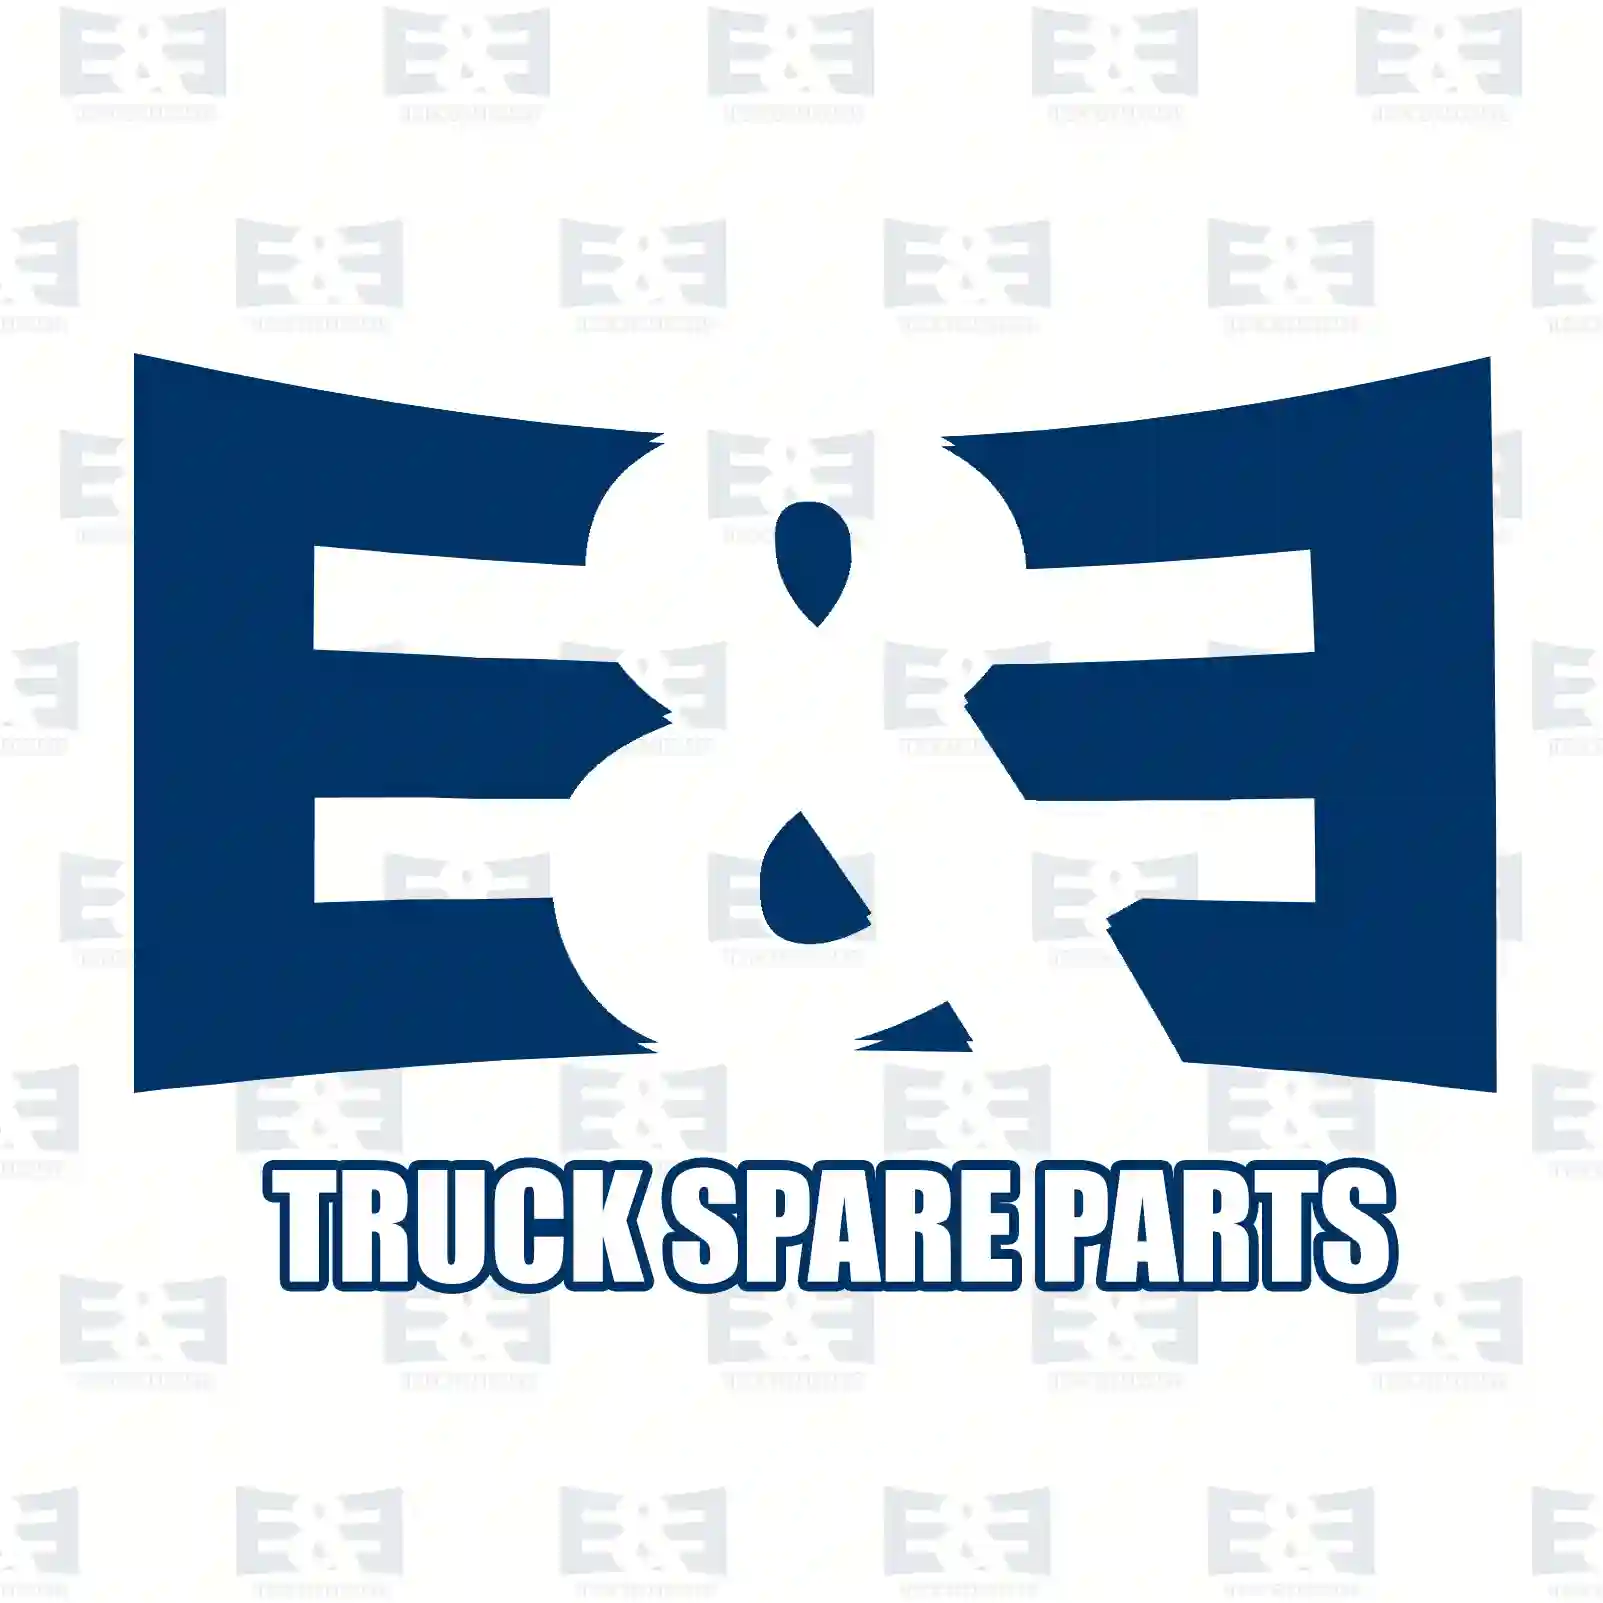 Brake disc, 2E2296291, 1387781, 1520373, 1568640, 1738815, 4041428, YC1J-1125-B2B, YC1W-1125-B1A, YC1W-1125-B1B, YC1W-1125-BA, ||  2E2296291 E&E Truck Spare Parts | Truck Spare Parts, Auotomotive Spare Parts Brake disc, 2E2296291, 1387781, 1520373, 1568640, 1738815, 4041428, YC1J-1125-B2B, YC1W-1125-B1A, YC1W-1125-B1B, YC1W-1125-BA, ||  2E2296291 E&E Truck Spare Parts | Truck Spare Parts, Auotomotive Spare Parts